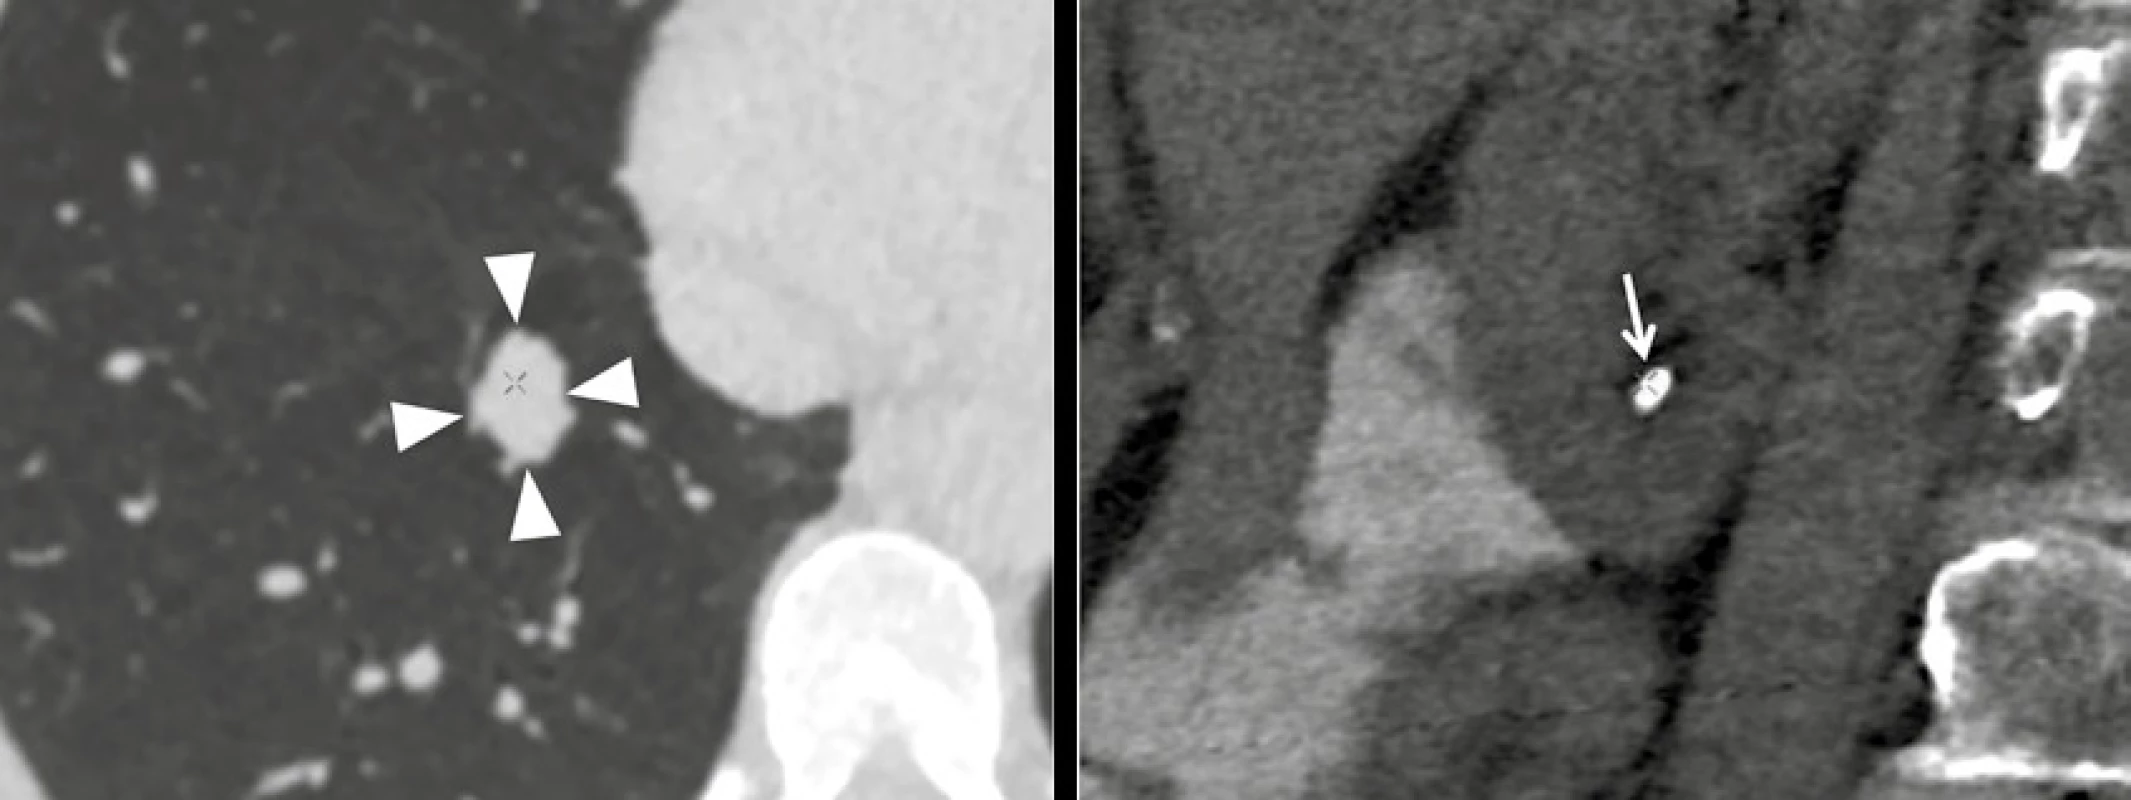 Extrakolonické nálezy při CT kolografii. Uzel v pravém dolním laloku plicním velikosti 19 × 14 mm (C-RADS E4, vlevo), pravostranná nefrolitiáza v dolním kalichu (C-RADS E2, vpravo)